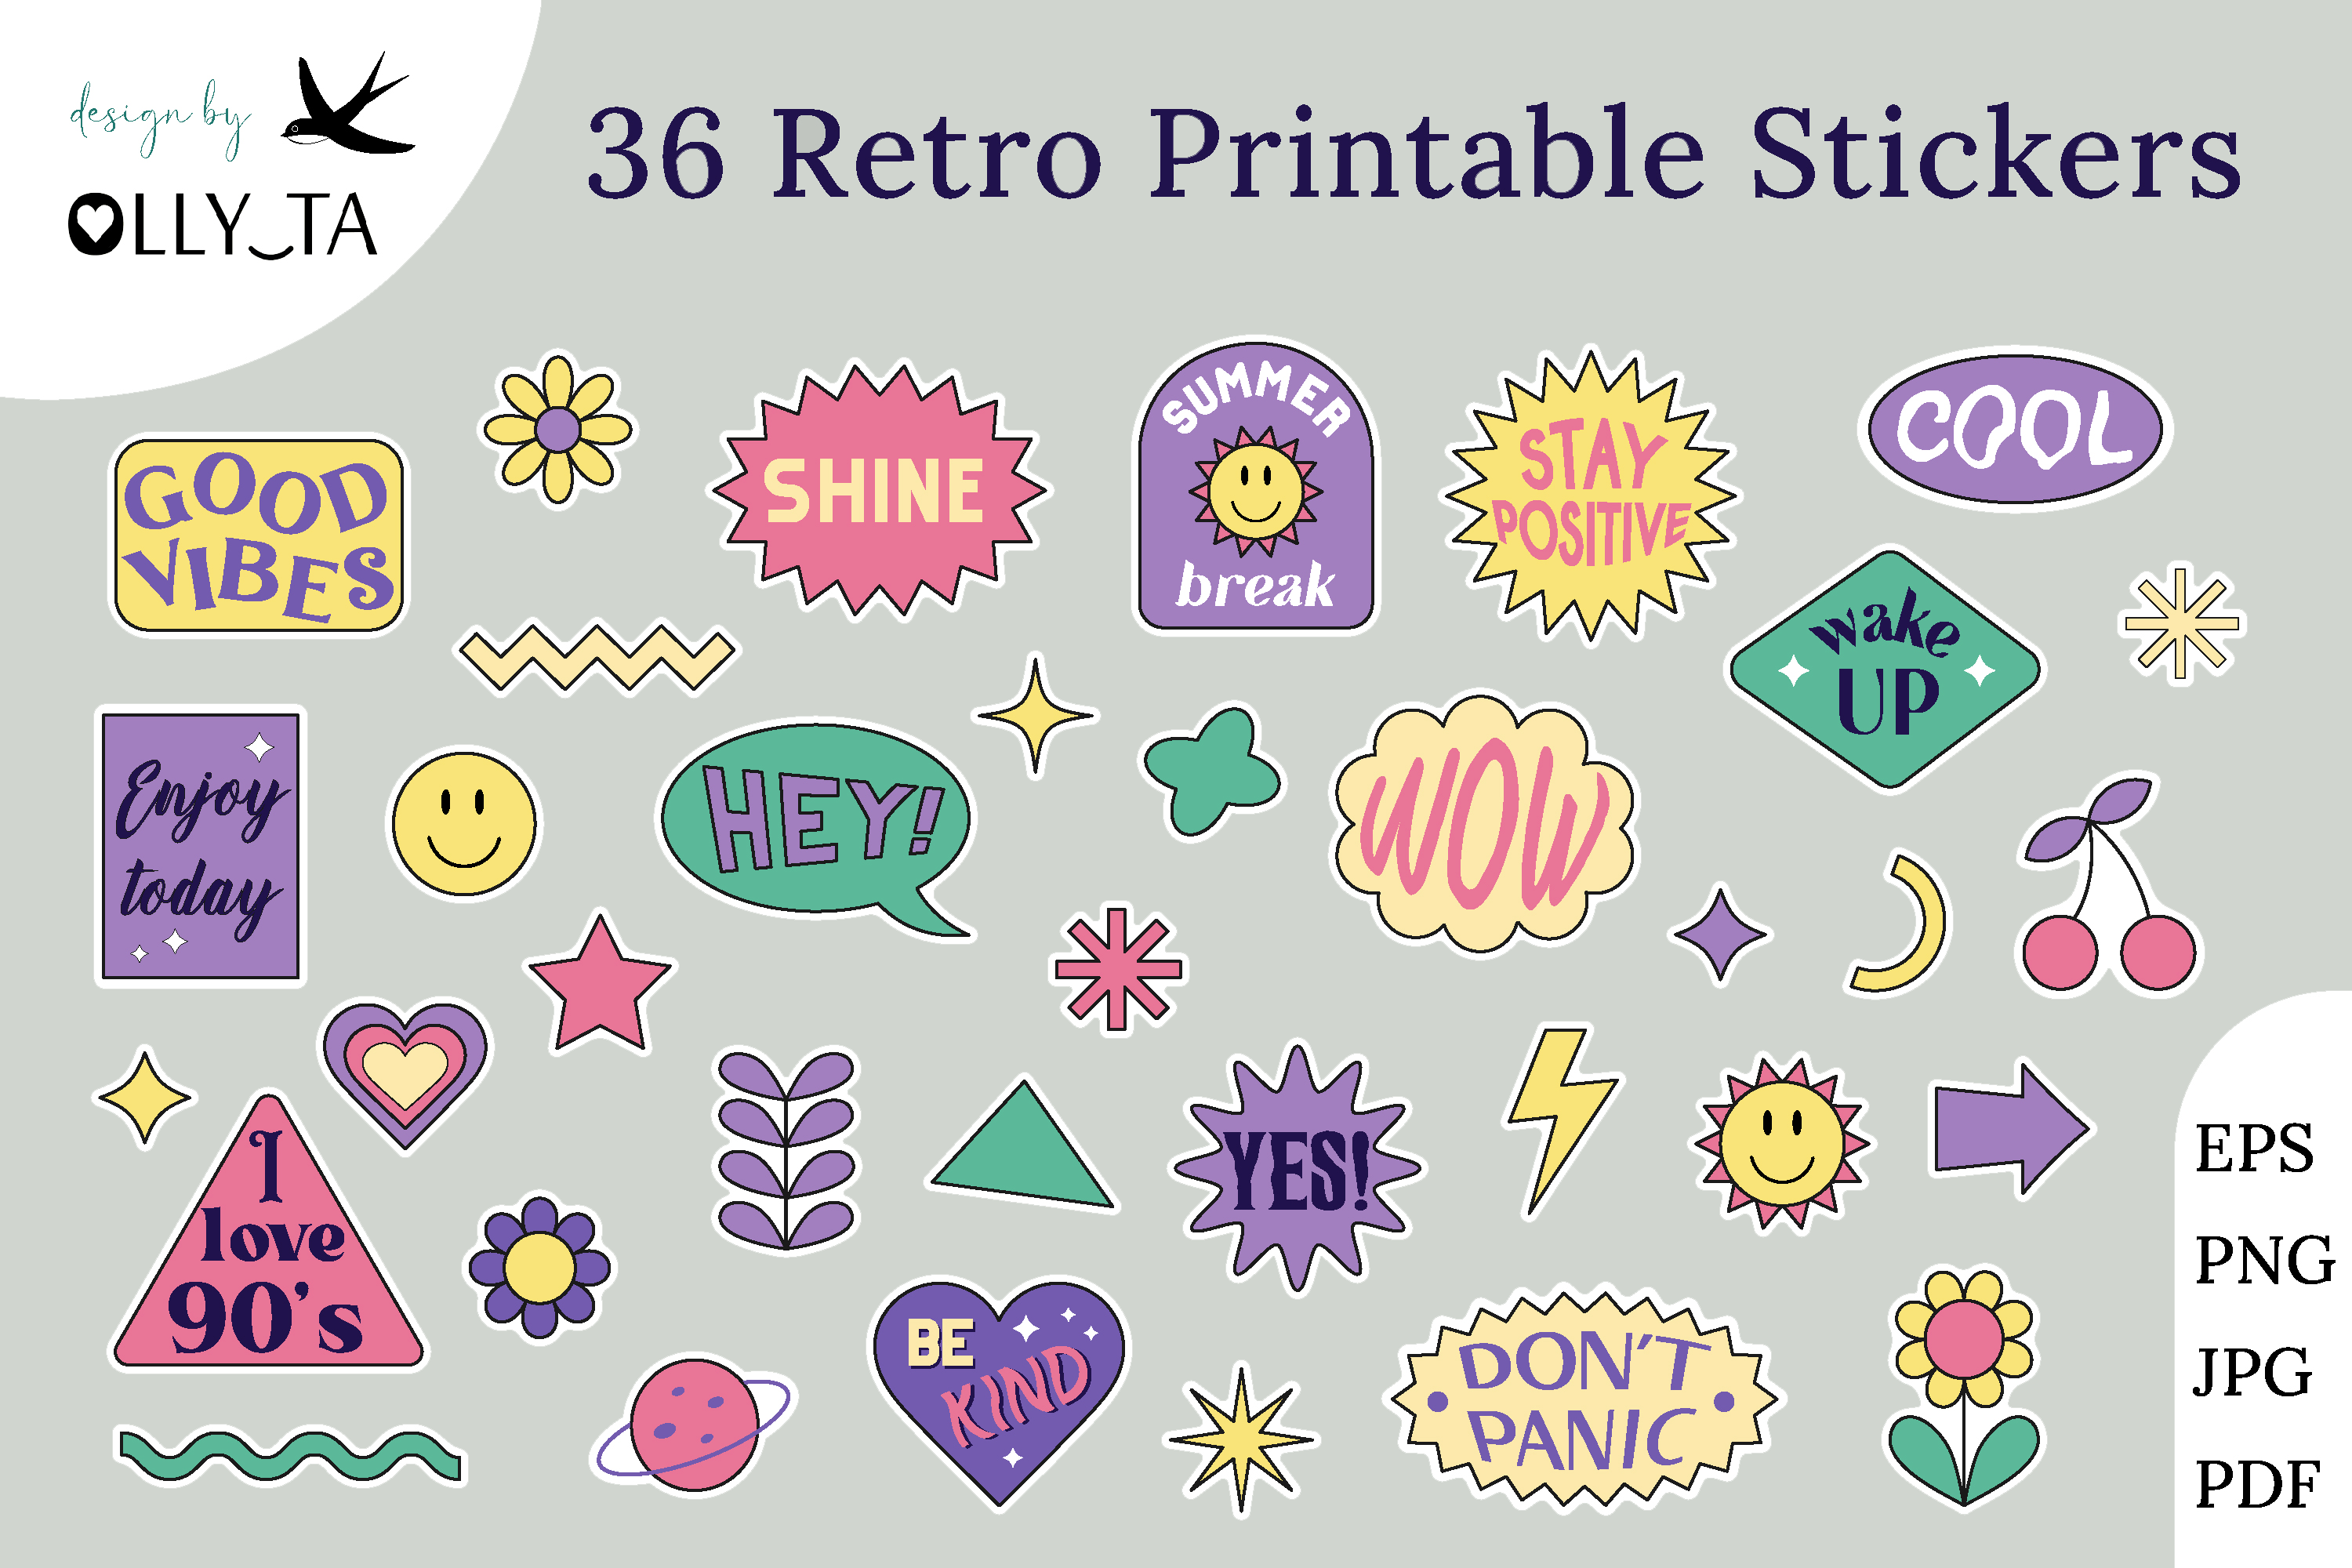 Retro Is cool Design - Retro - Sticker